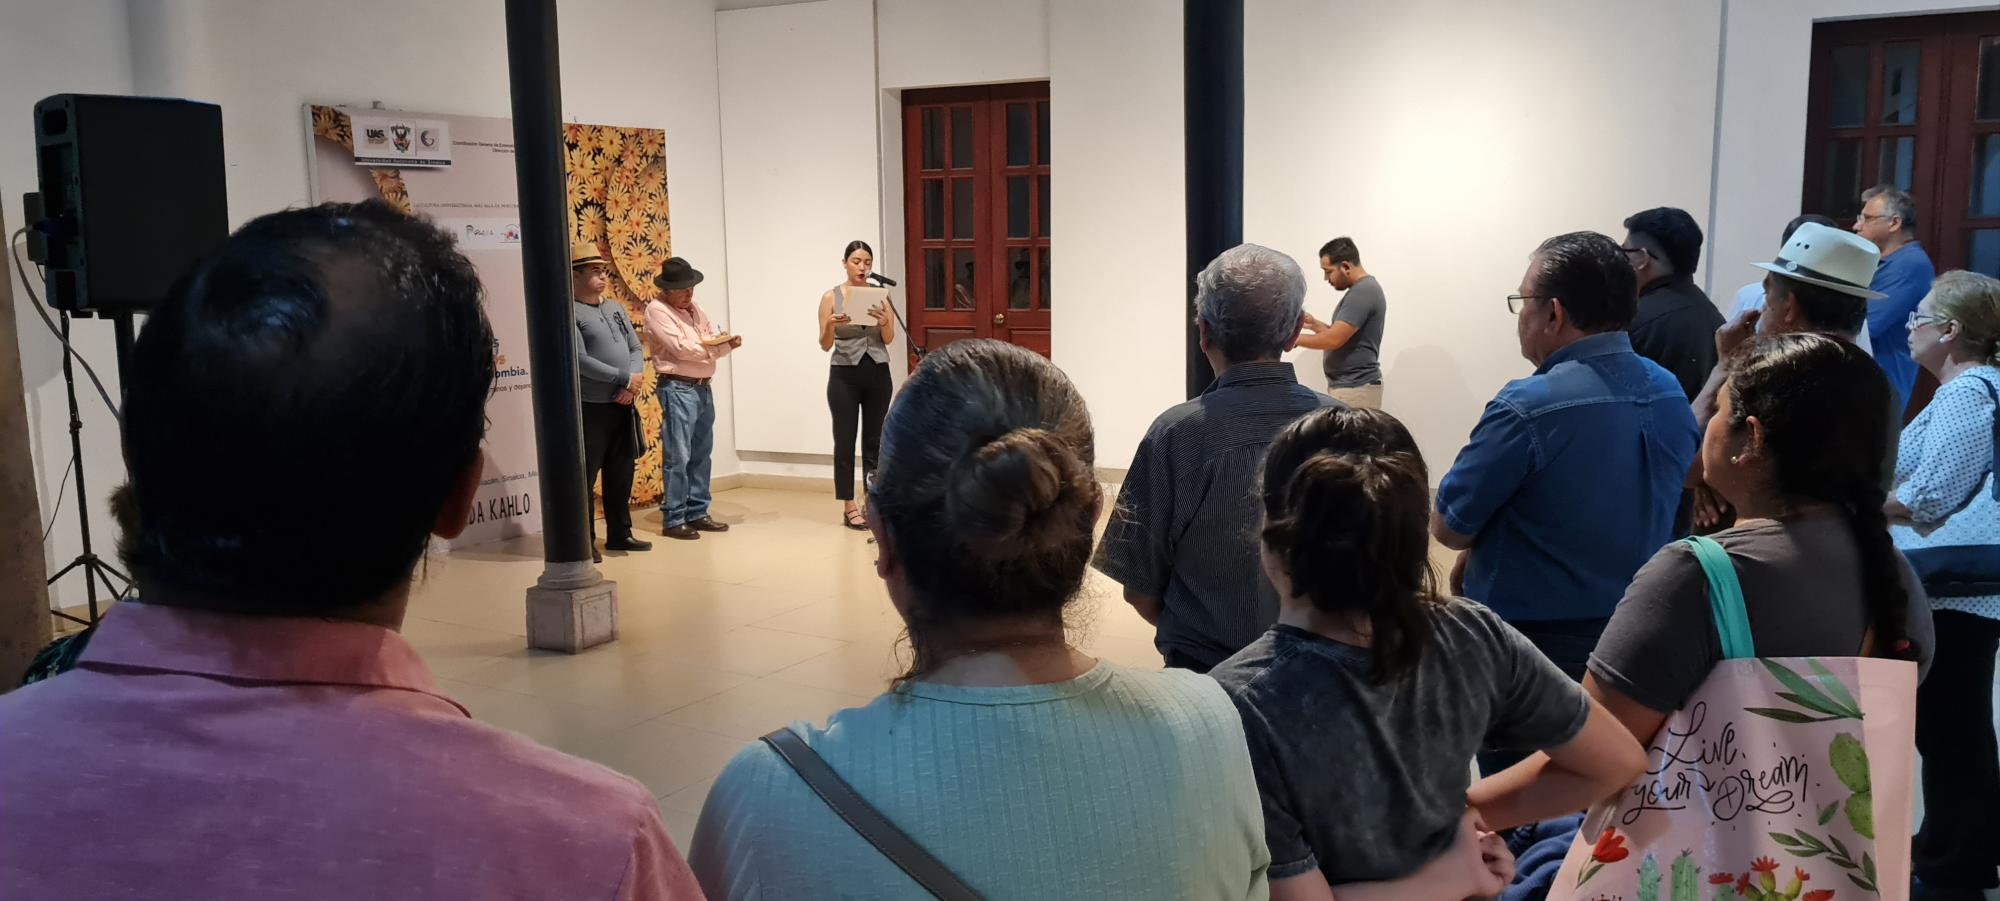 $!El artista Juleo Calderón y Jorge Luis Reyes Hurtado inauguraron la exposición.